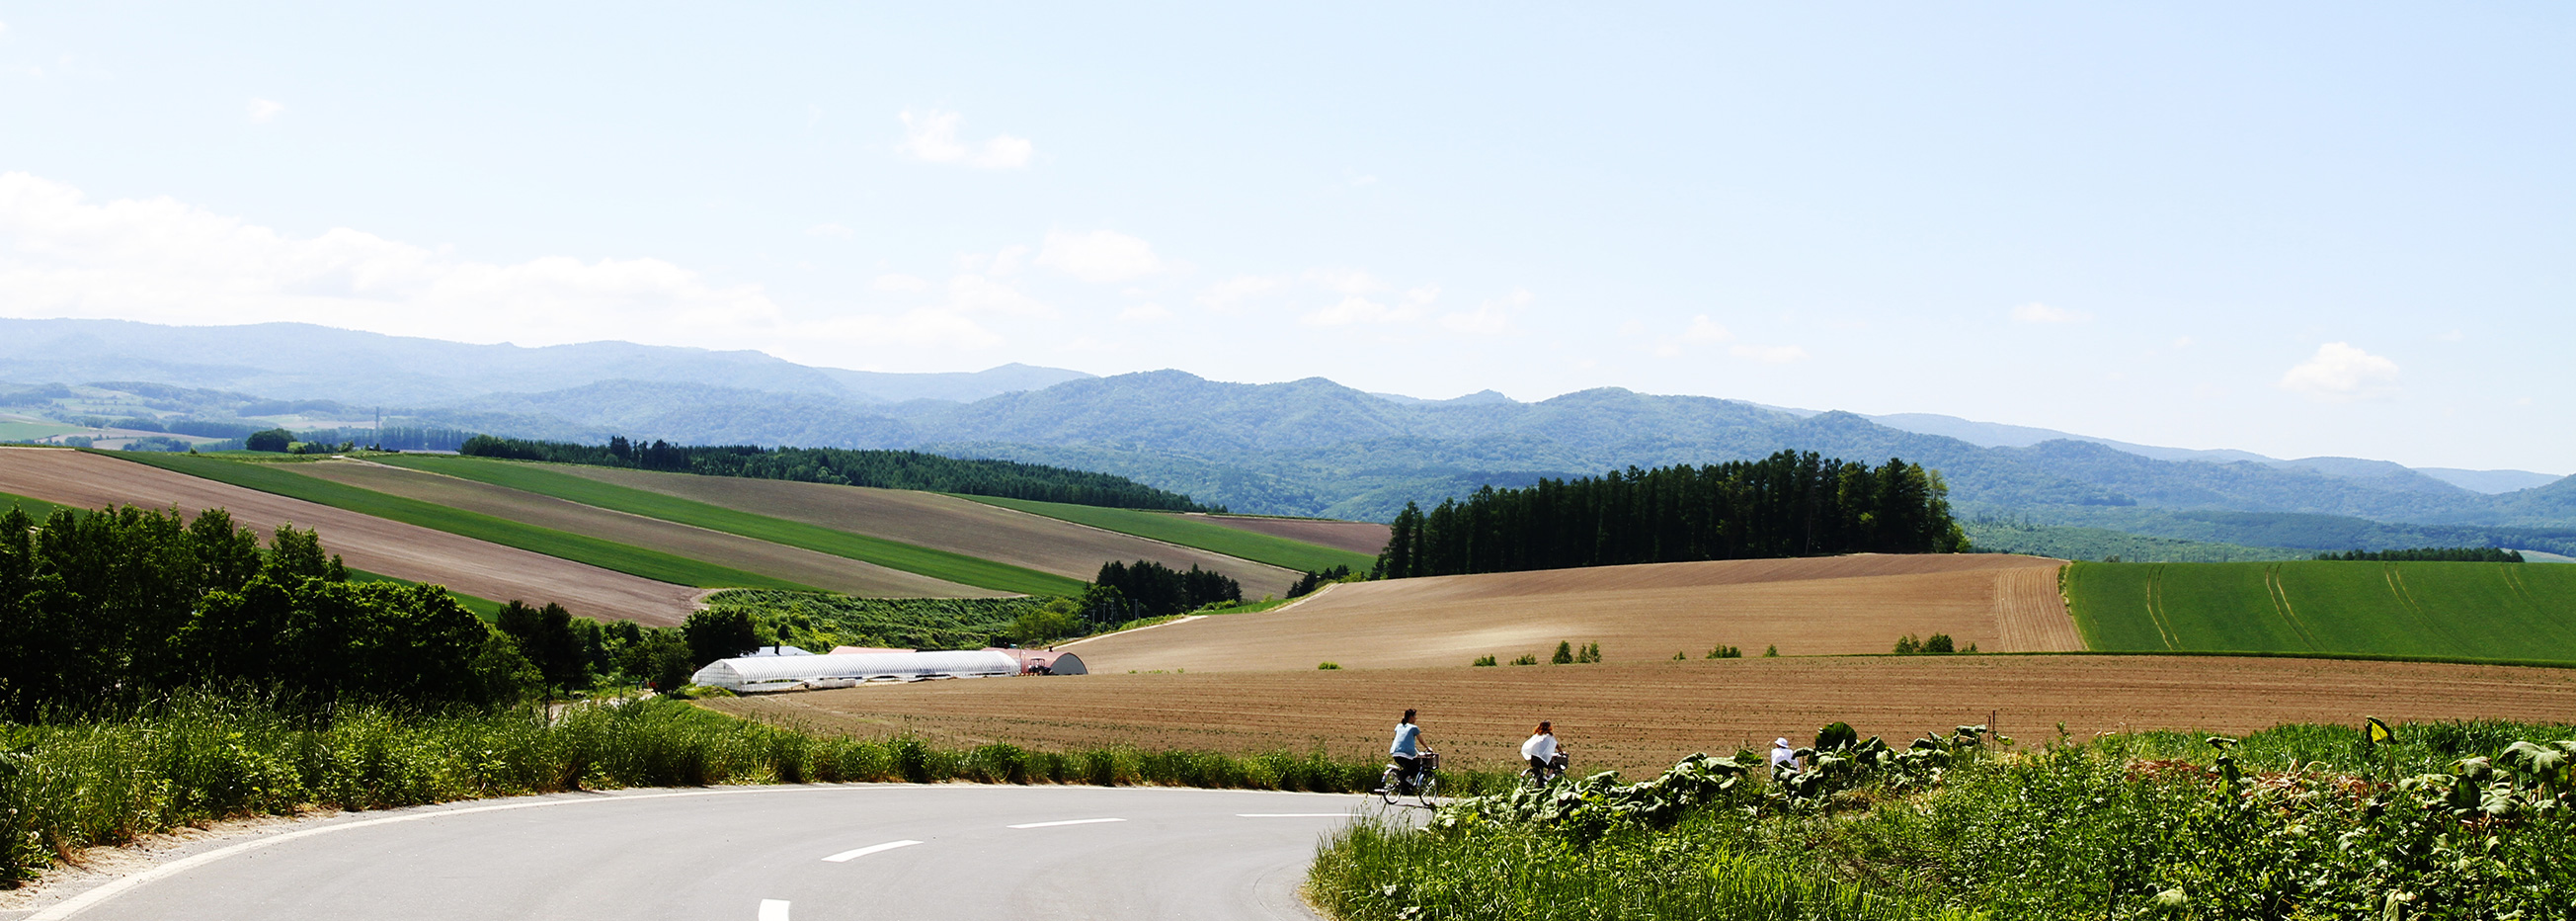 Visit the hills of Biei by rental bike